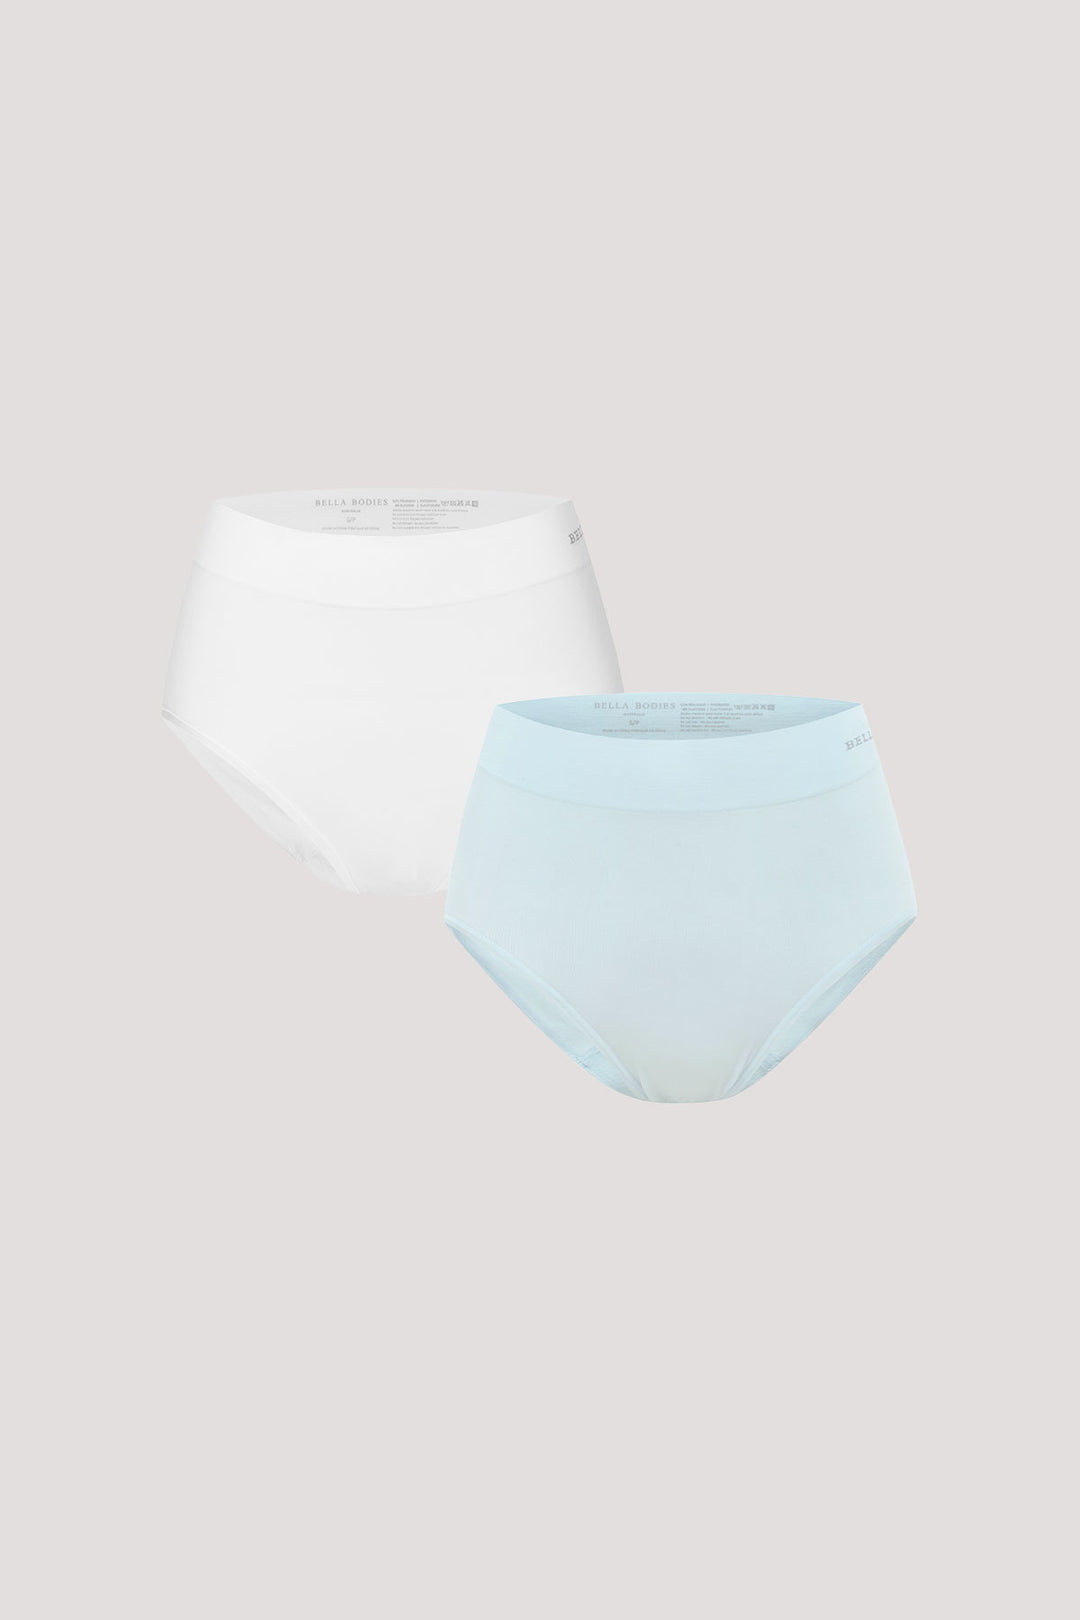 Women's super soft high waist underwear 2 pack | Bella Bodies UK | White and Ice Blue